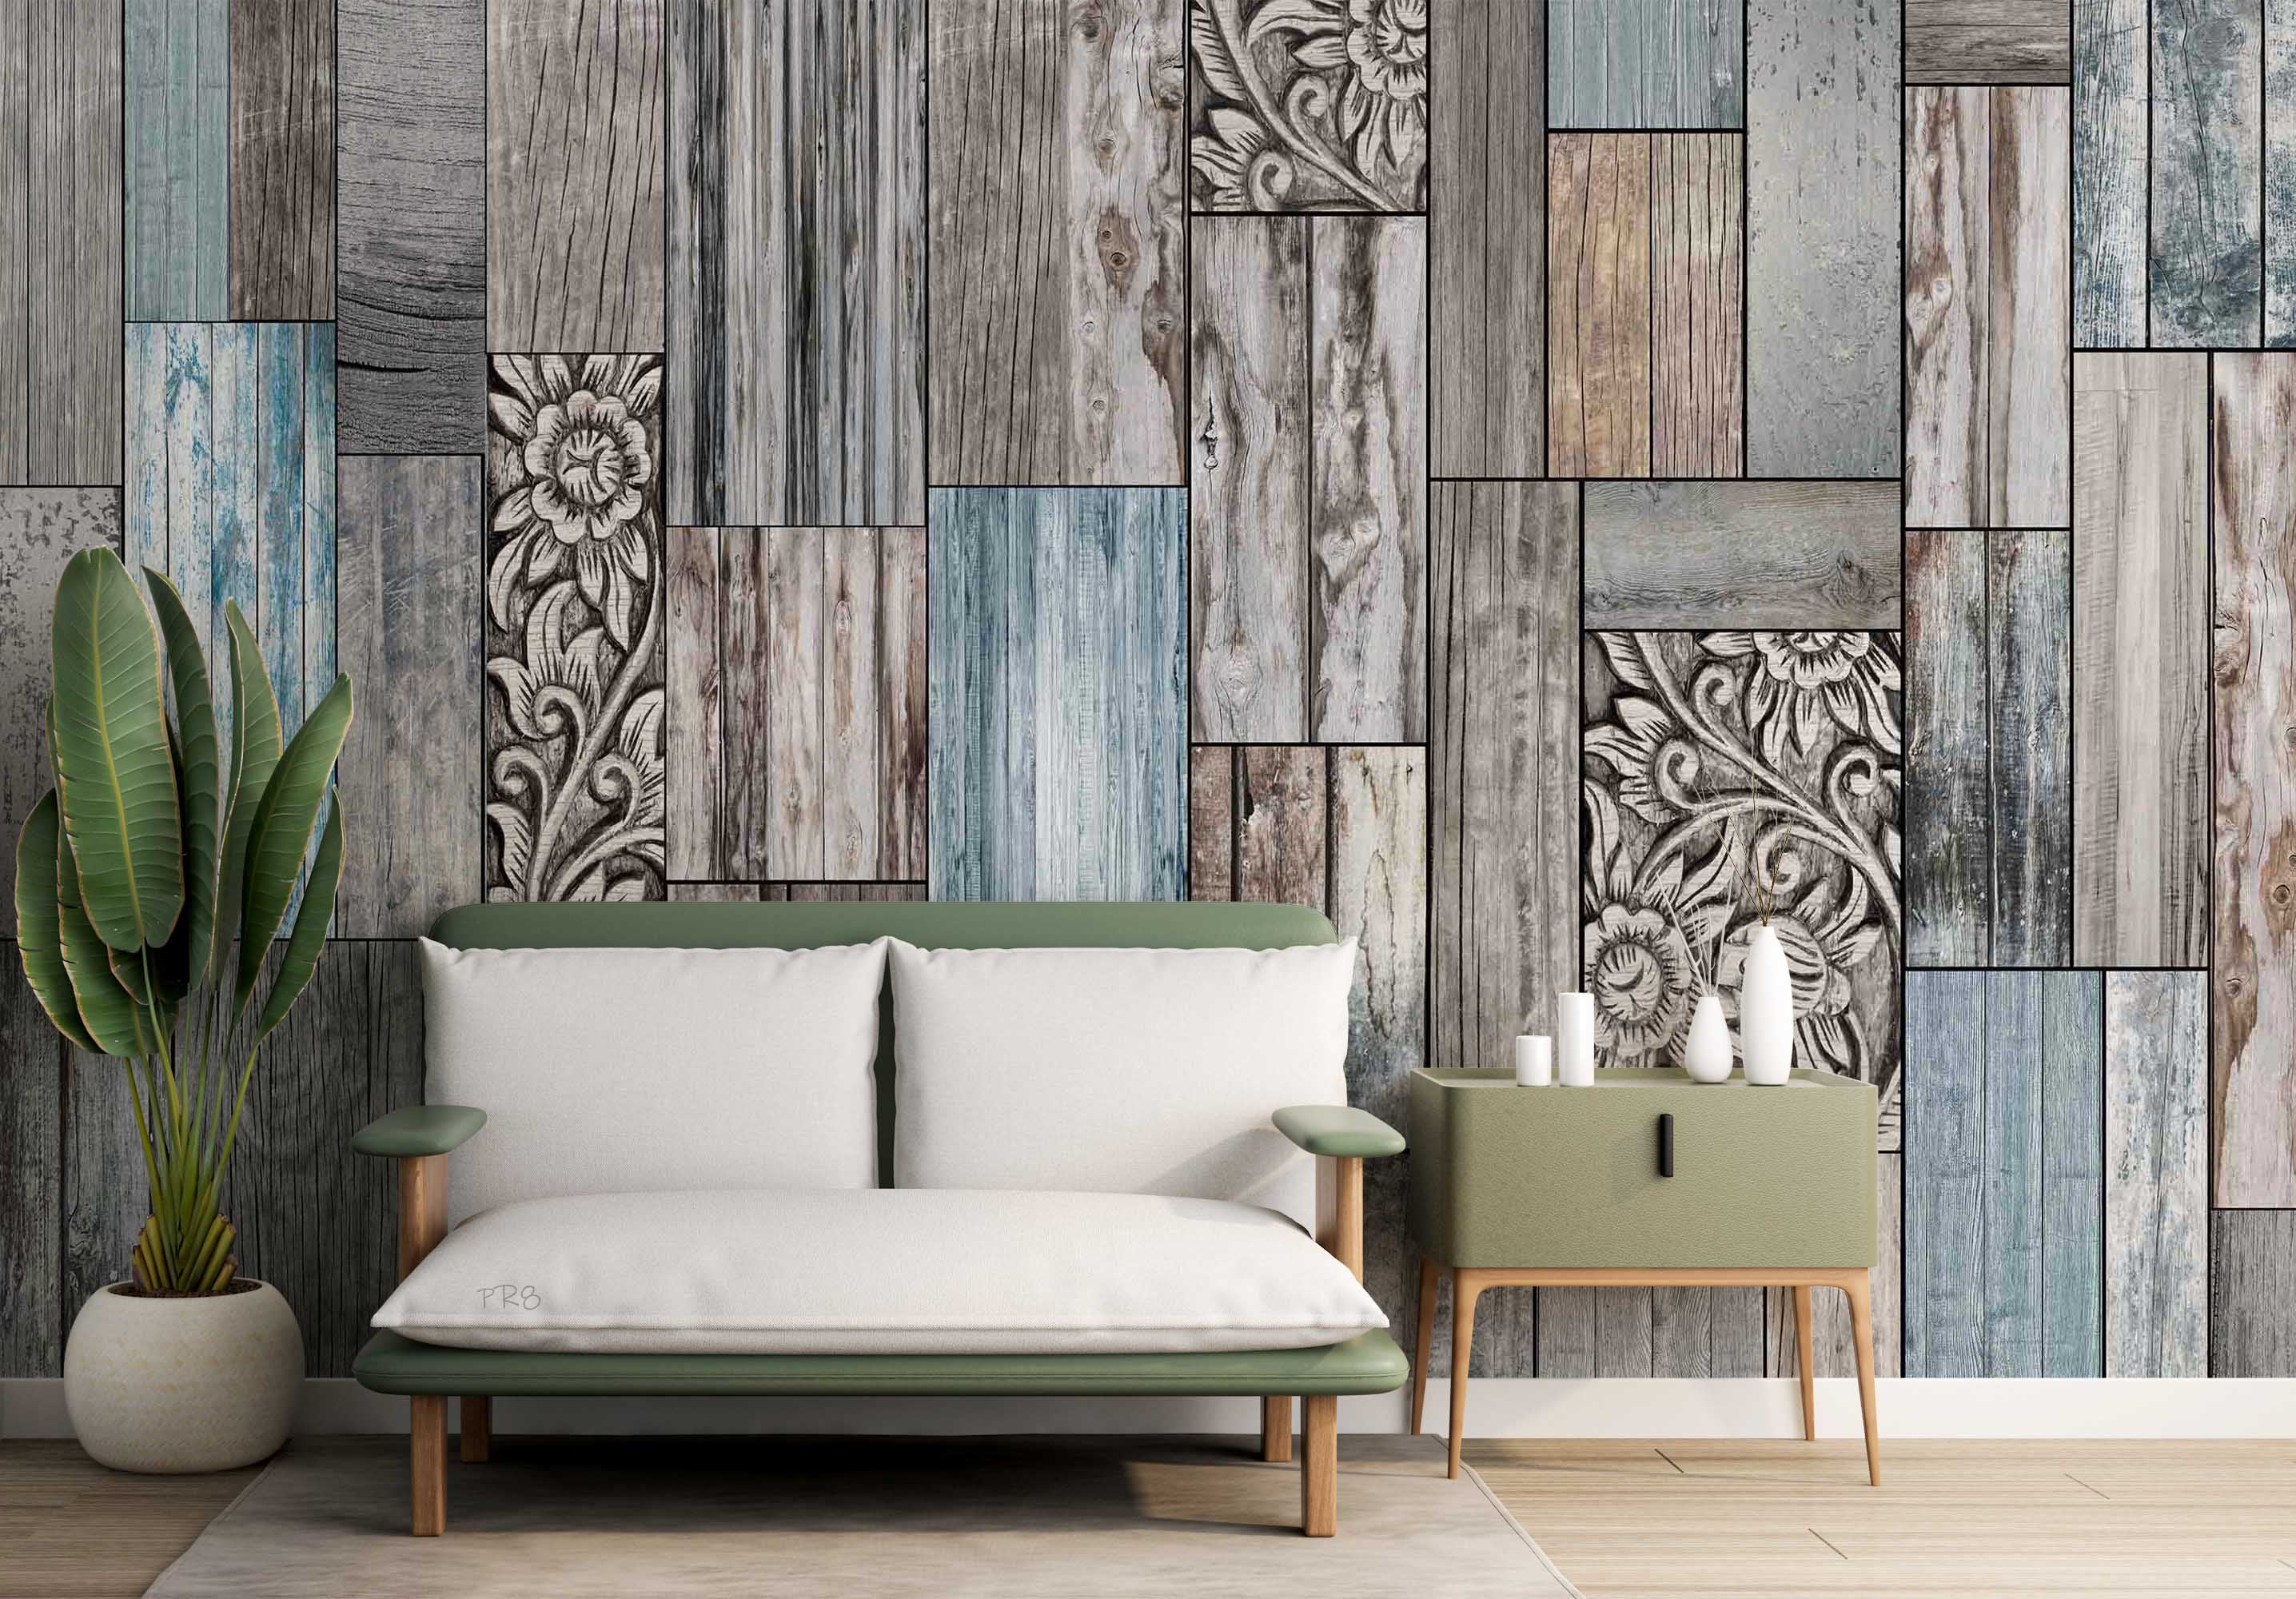 3D Vintage Wooden Floor Texture Pattern Wall Mural Wallpaper GD 4547- Jess Art Decoration